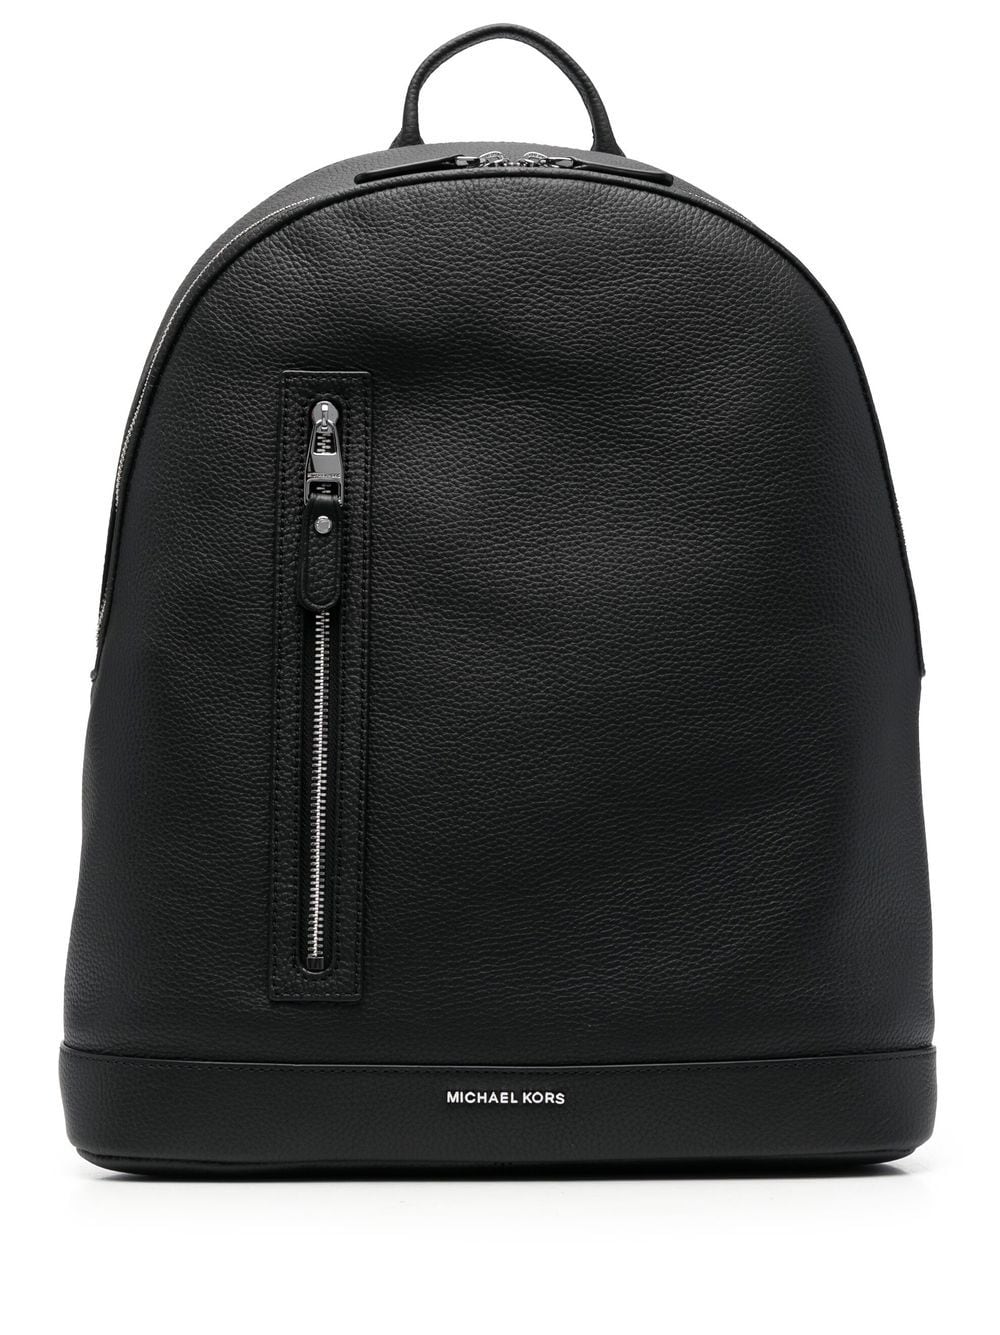 Hudson slim leather backpack